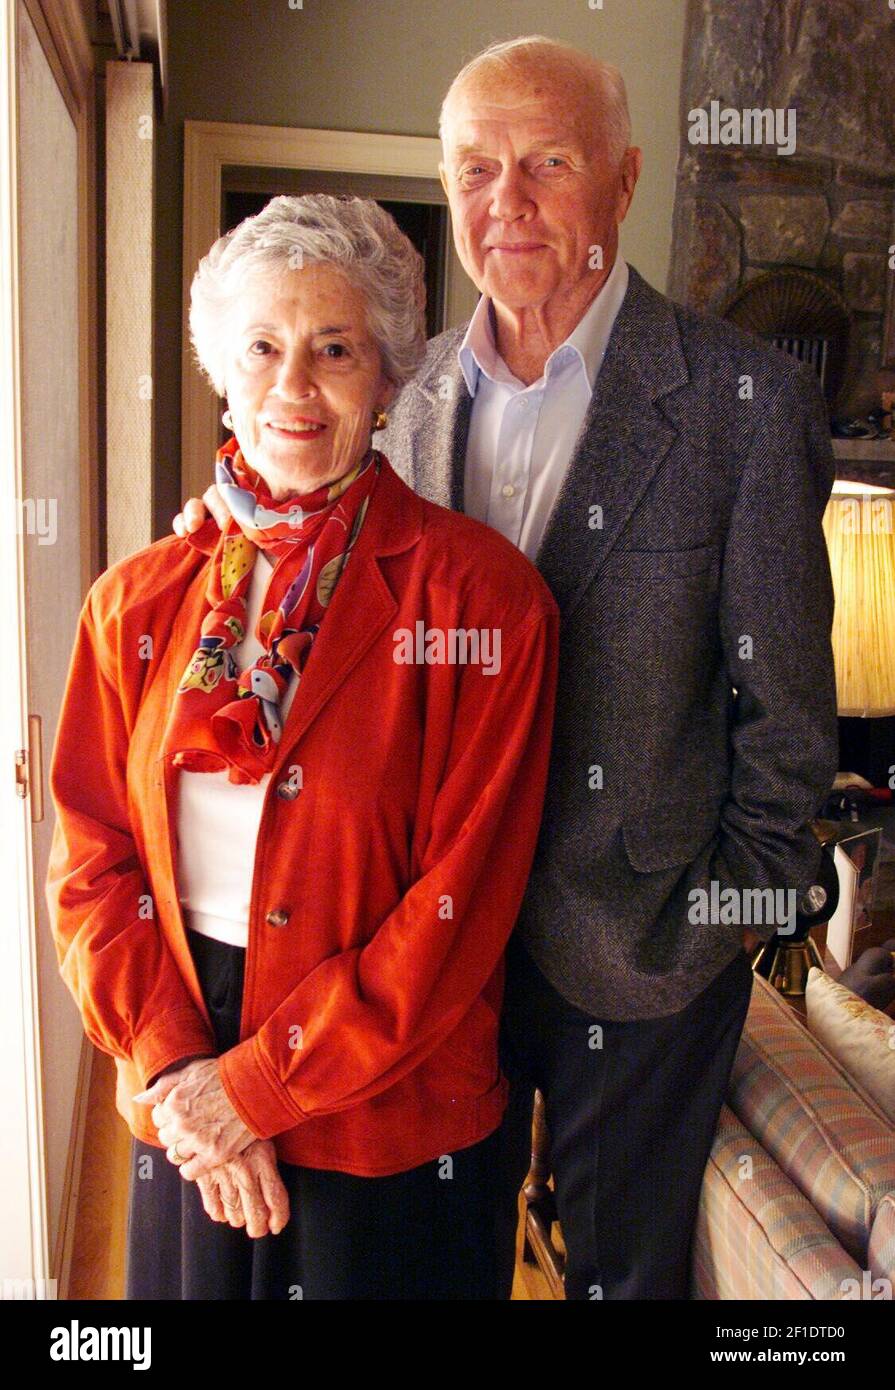 8 de octubre de 1999; Bethesda, MD, EE.UU.; El ex Senador y astronauta John Glenn en casa en Bethesda, Maryland, y su esposa Annie Glenn. Crédito obligatorio: Tim Dillon-USA TODAY/Sipa USA Foto de stock